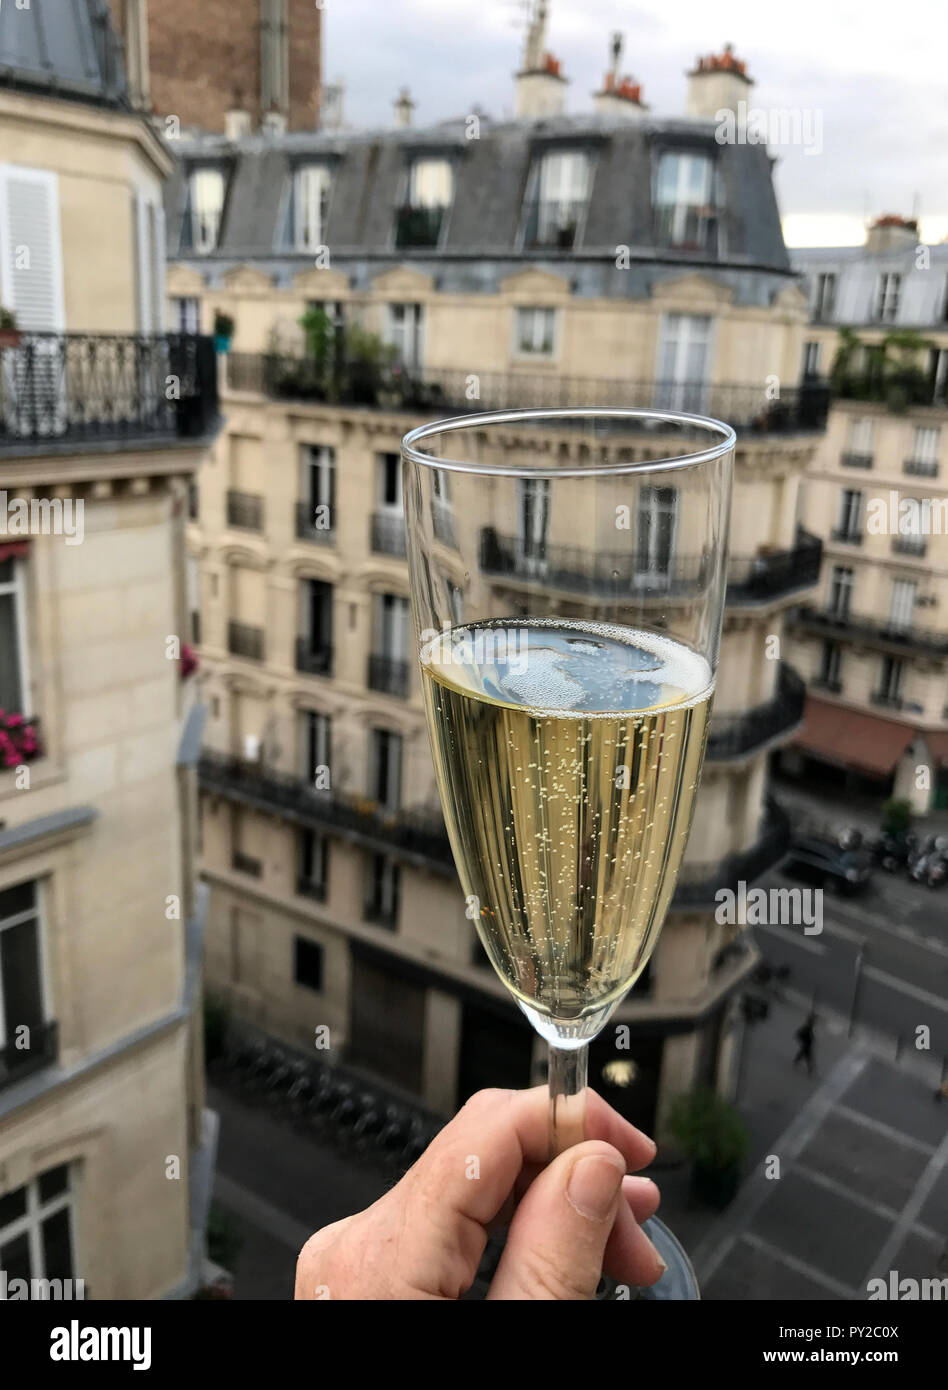 Mano de mujer con una copa de Champagne, Paris, Francia Fotografía de stock  - Alamy